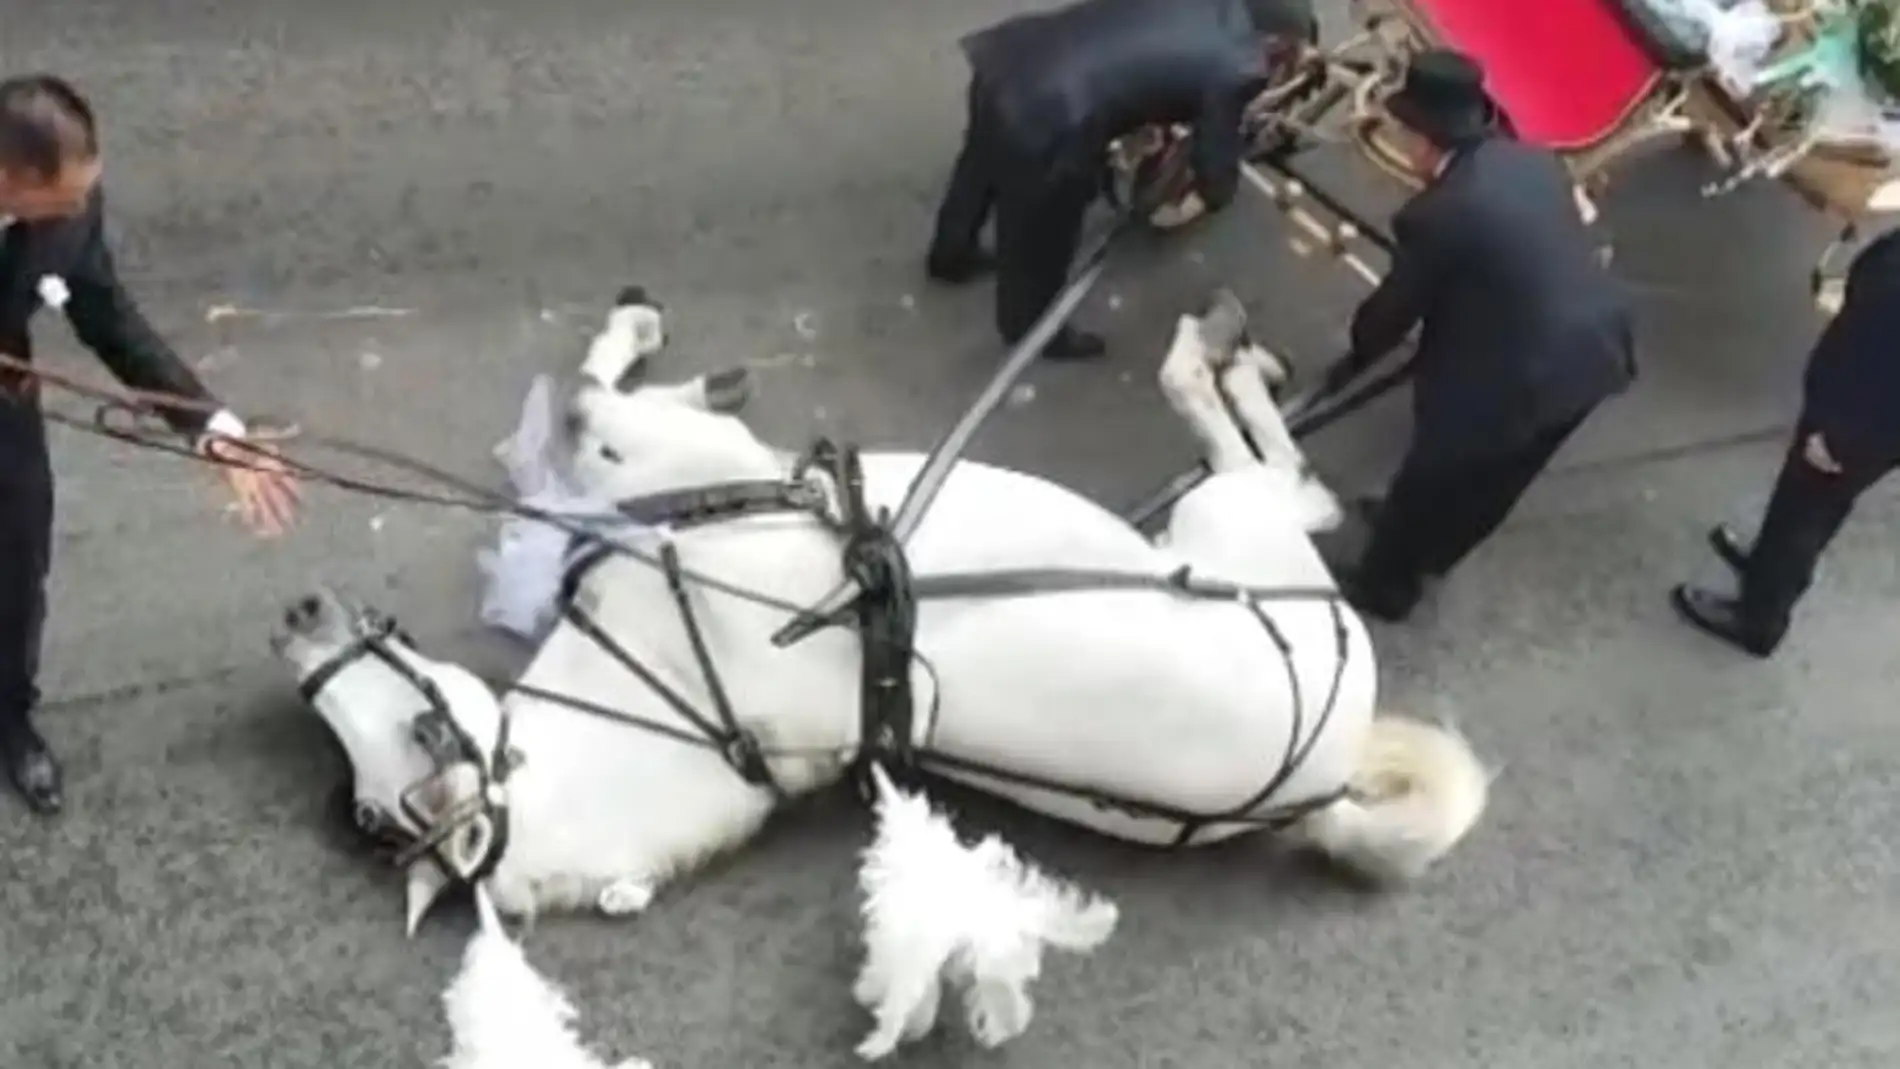 Imagen del caballo que se desplomó por agotamiento en Sicilia